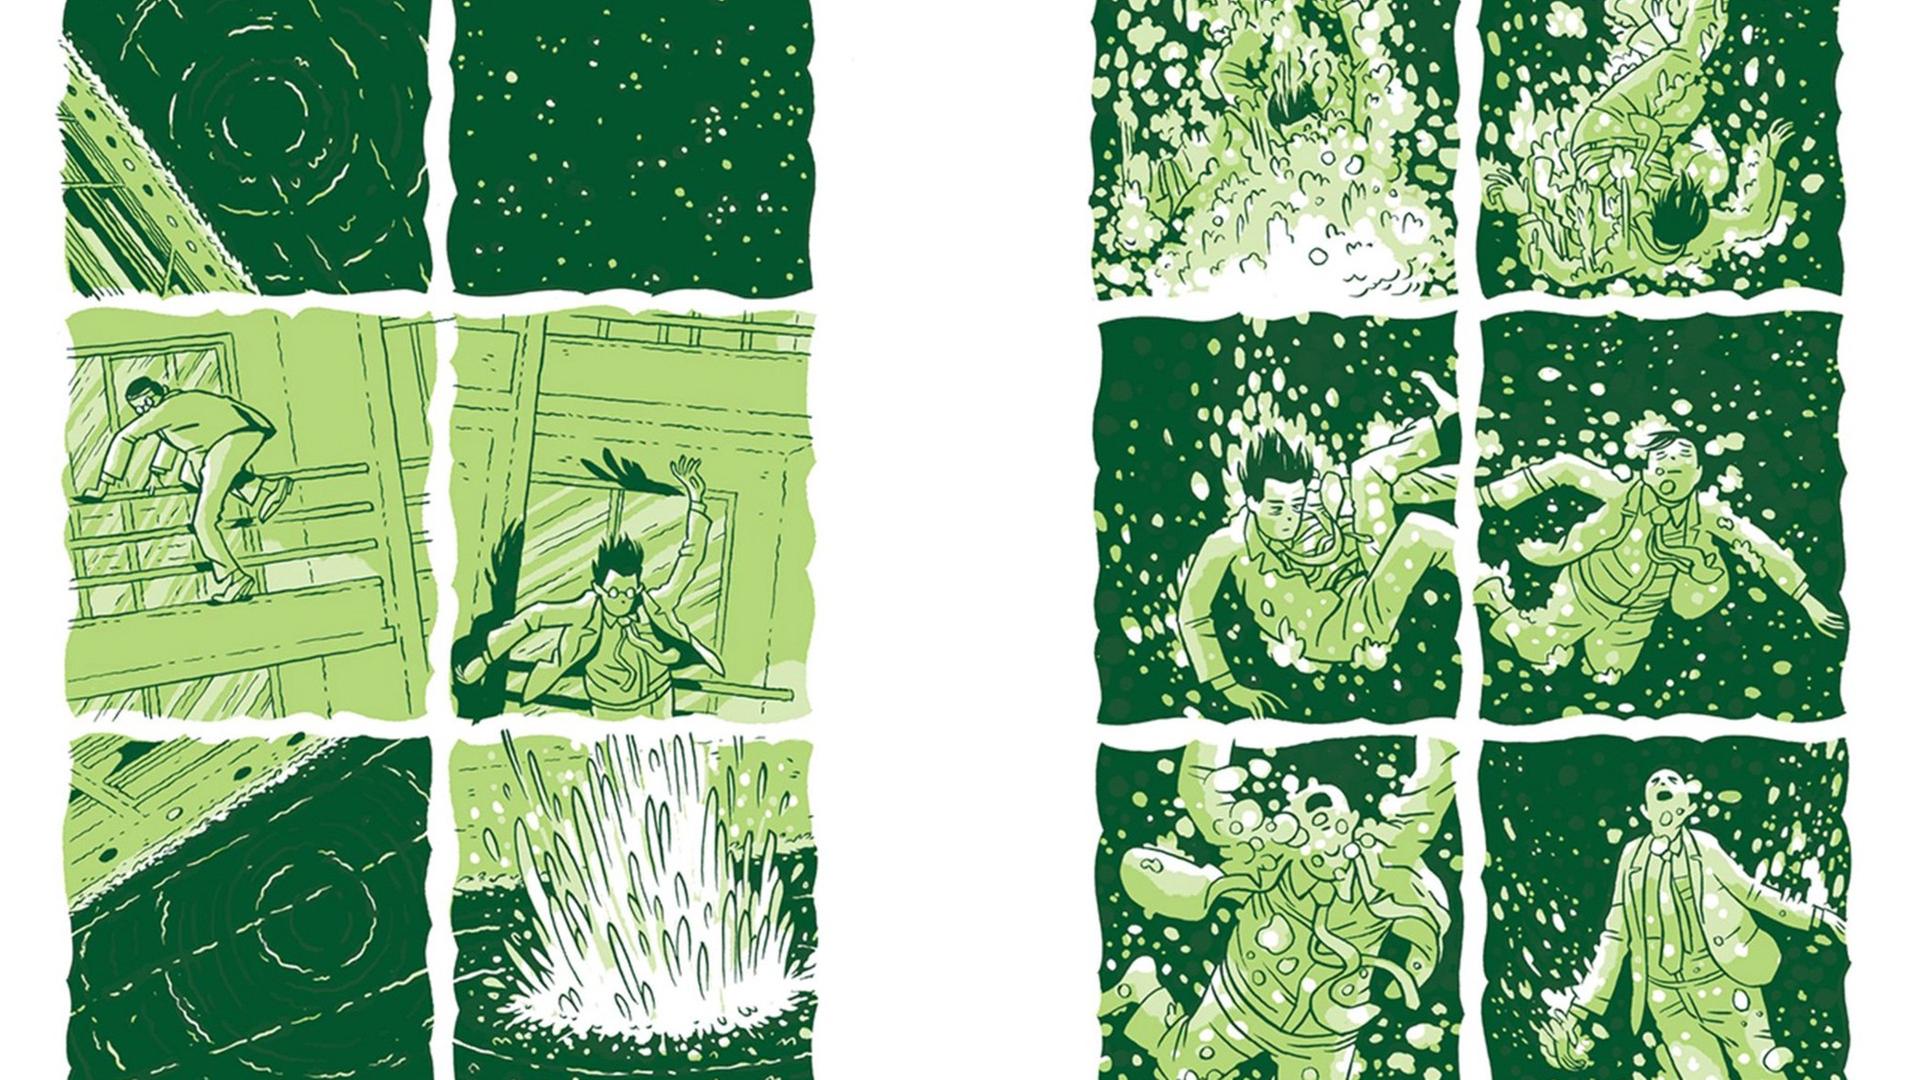 Ausschnitt aus der Graphic Novel "Zwei bleiben" von Jordan Crane: Ein Mann im Anzug ist ins Wasser gefallen, sein Körper trudelt darin herum. 